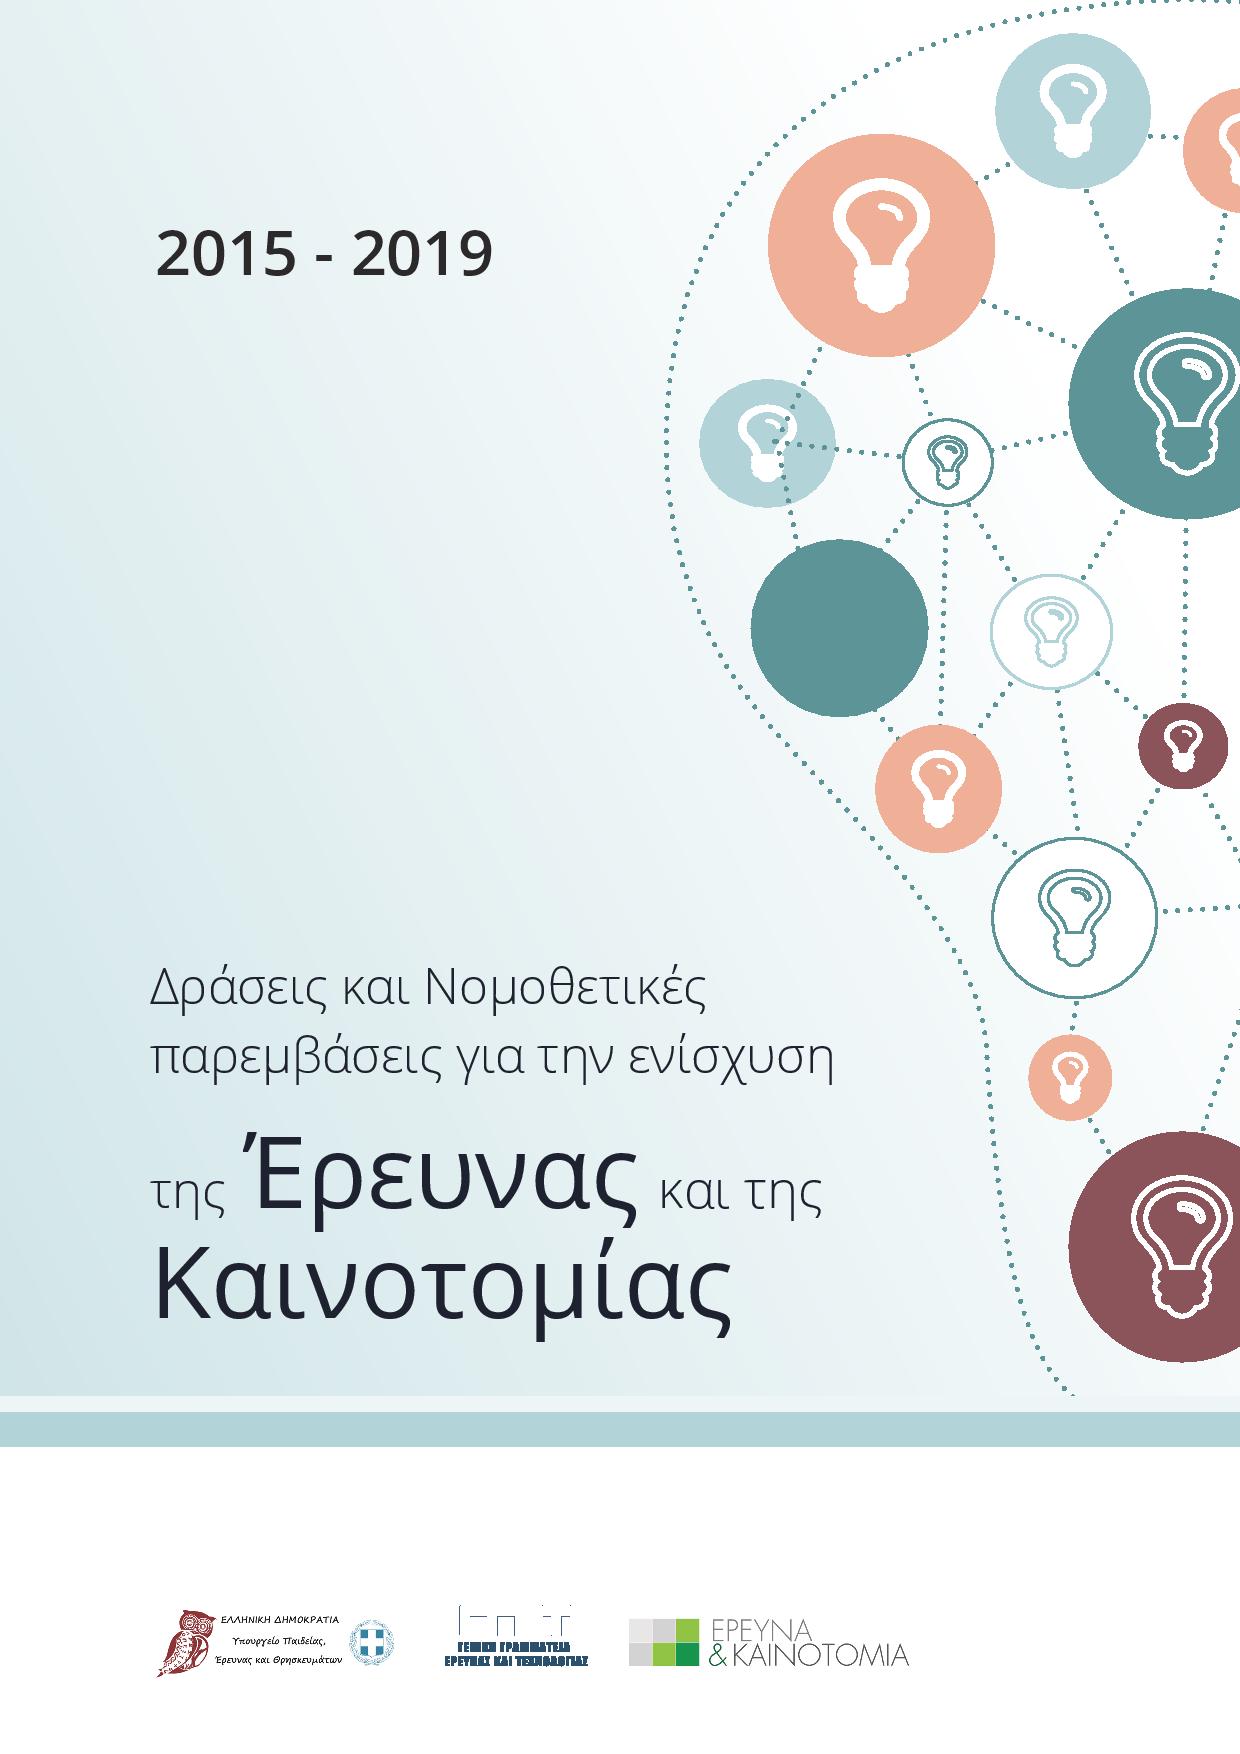 Δράσεις και νομοθετικές παρεμβάσεις για την ενίσχυση της Έρευνας και της Καινοτομίας (2015 - 2019) (2)